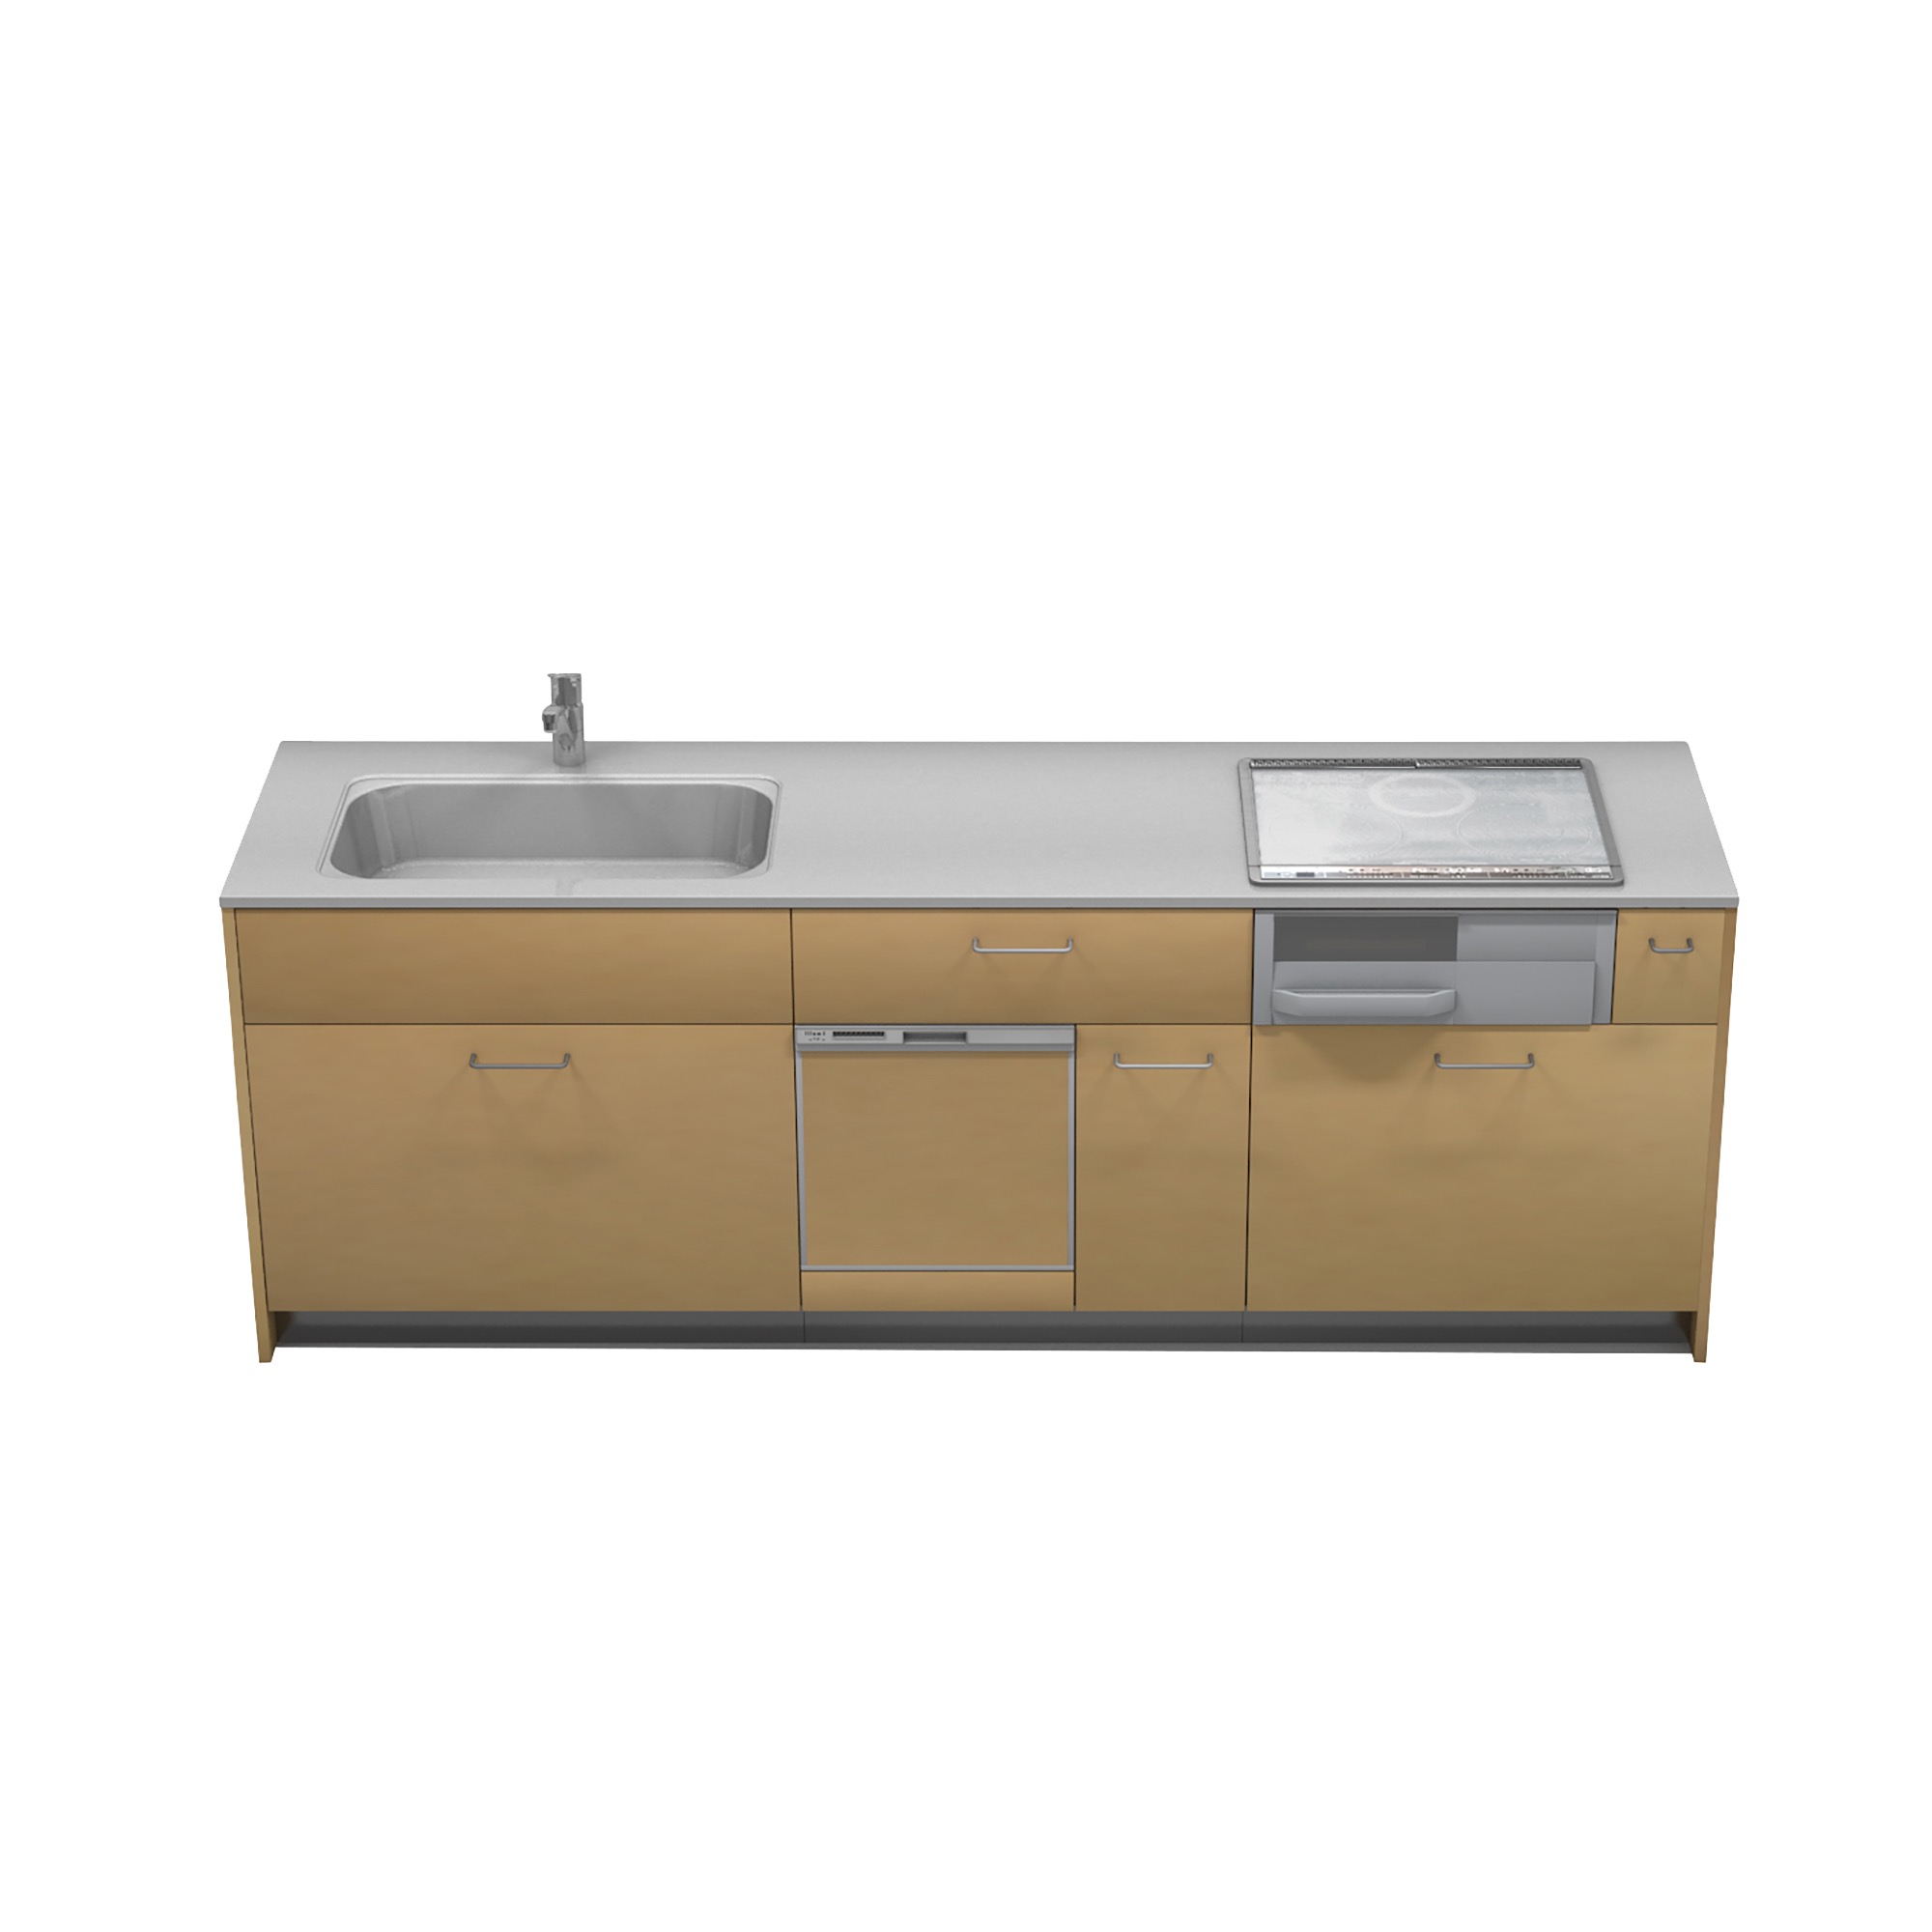 キッチンベース 壁付け型 食洗機タイプ KB-KC018-02-G177 W2400×D650 （把手は付属しません）※ 別売り品の水栓・コンロ・食洗機を設置した時のイメージです